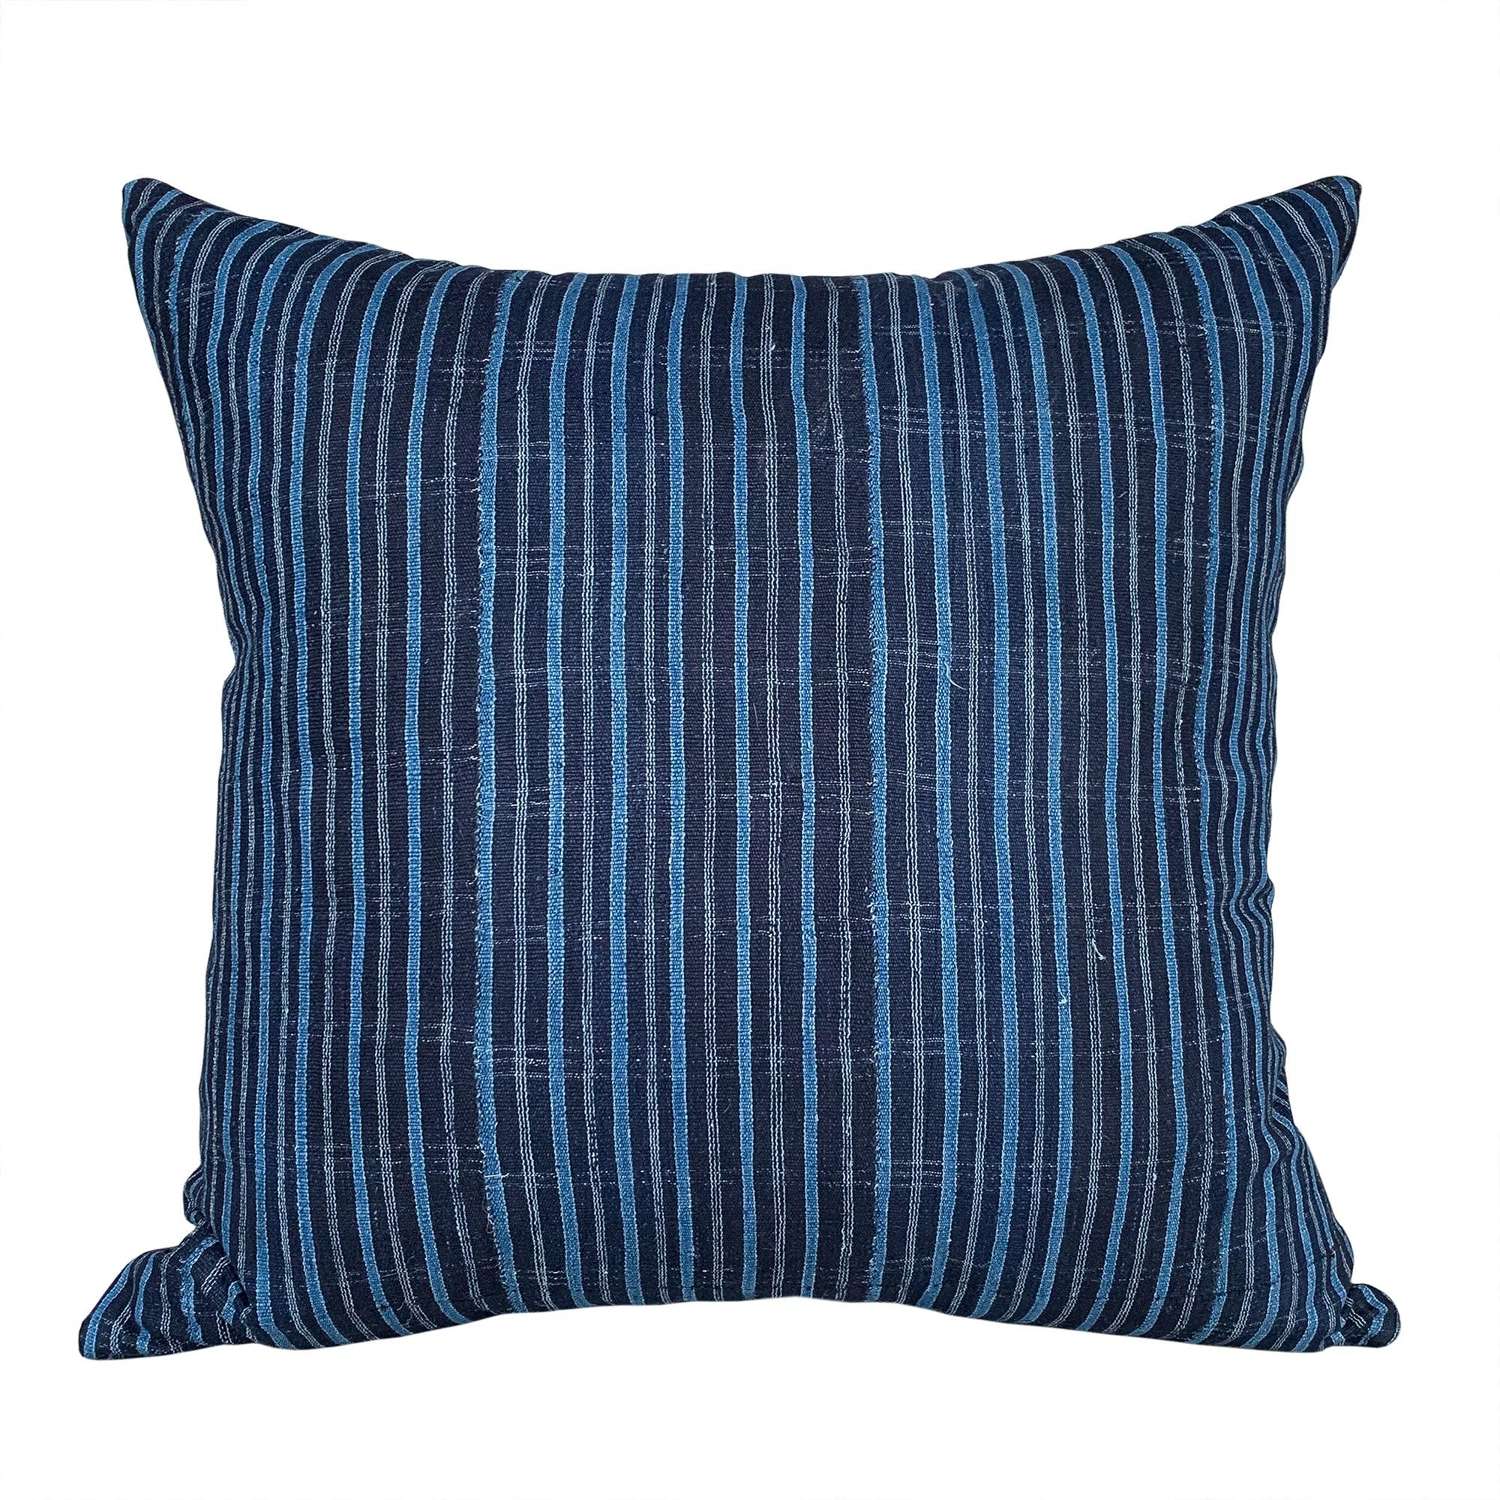 Indigo striped Yoruba cushion